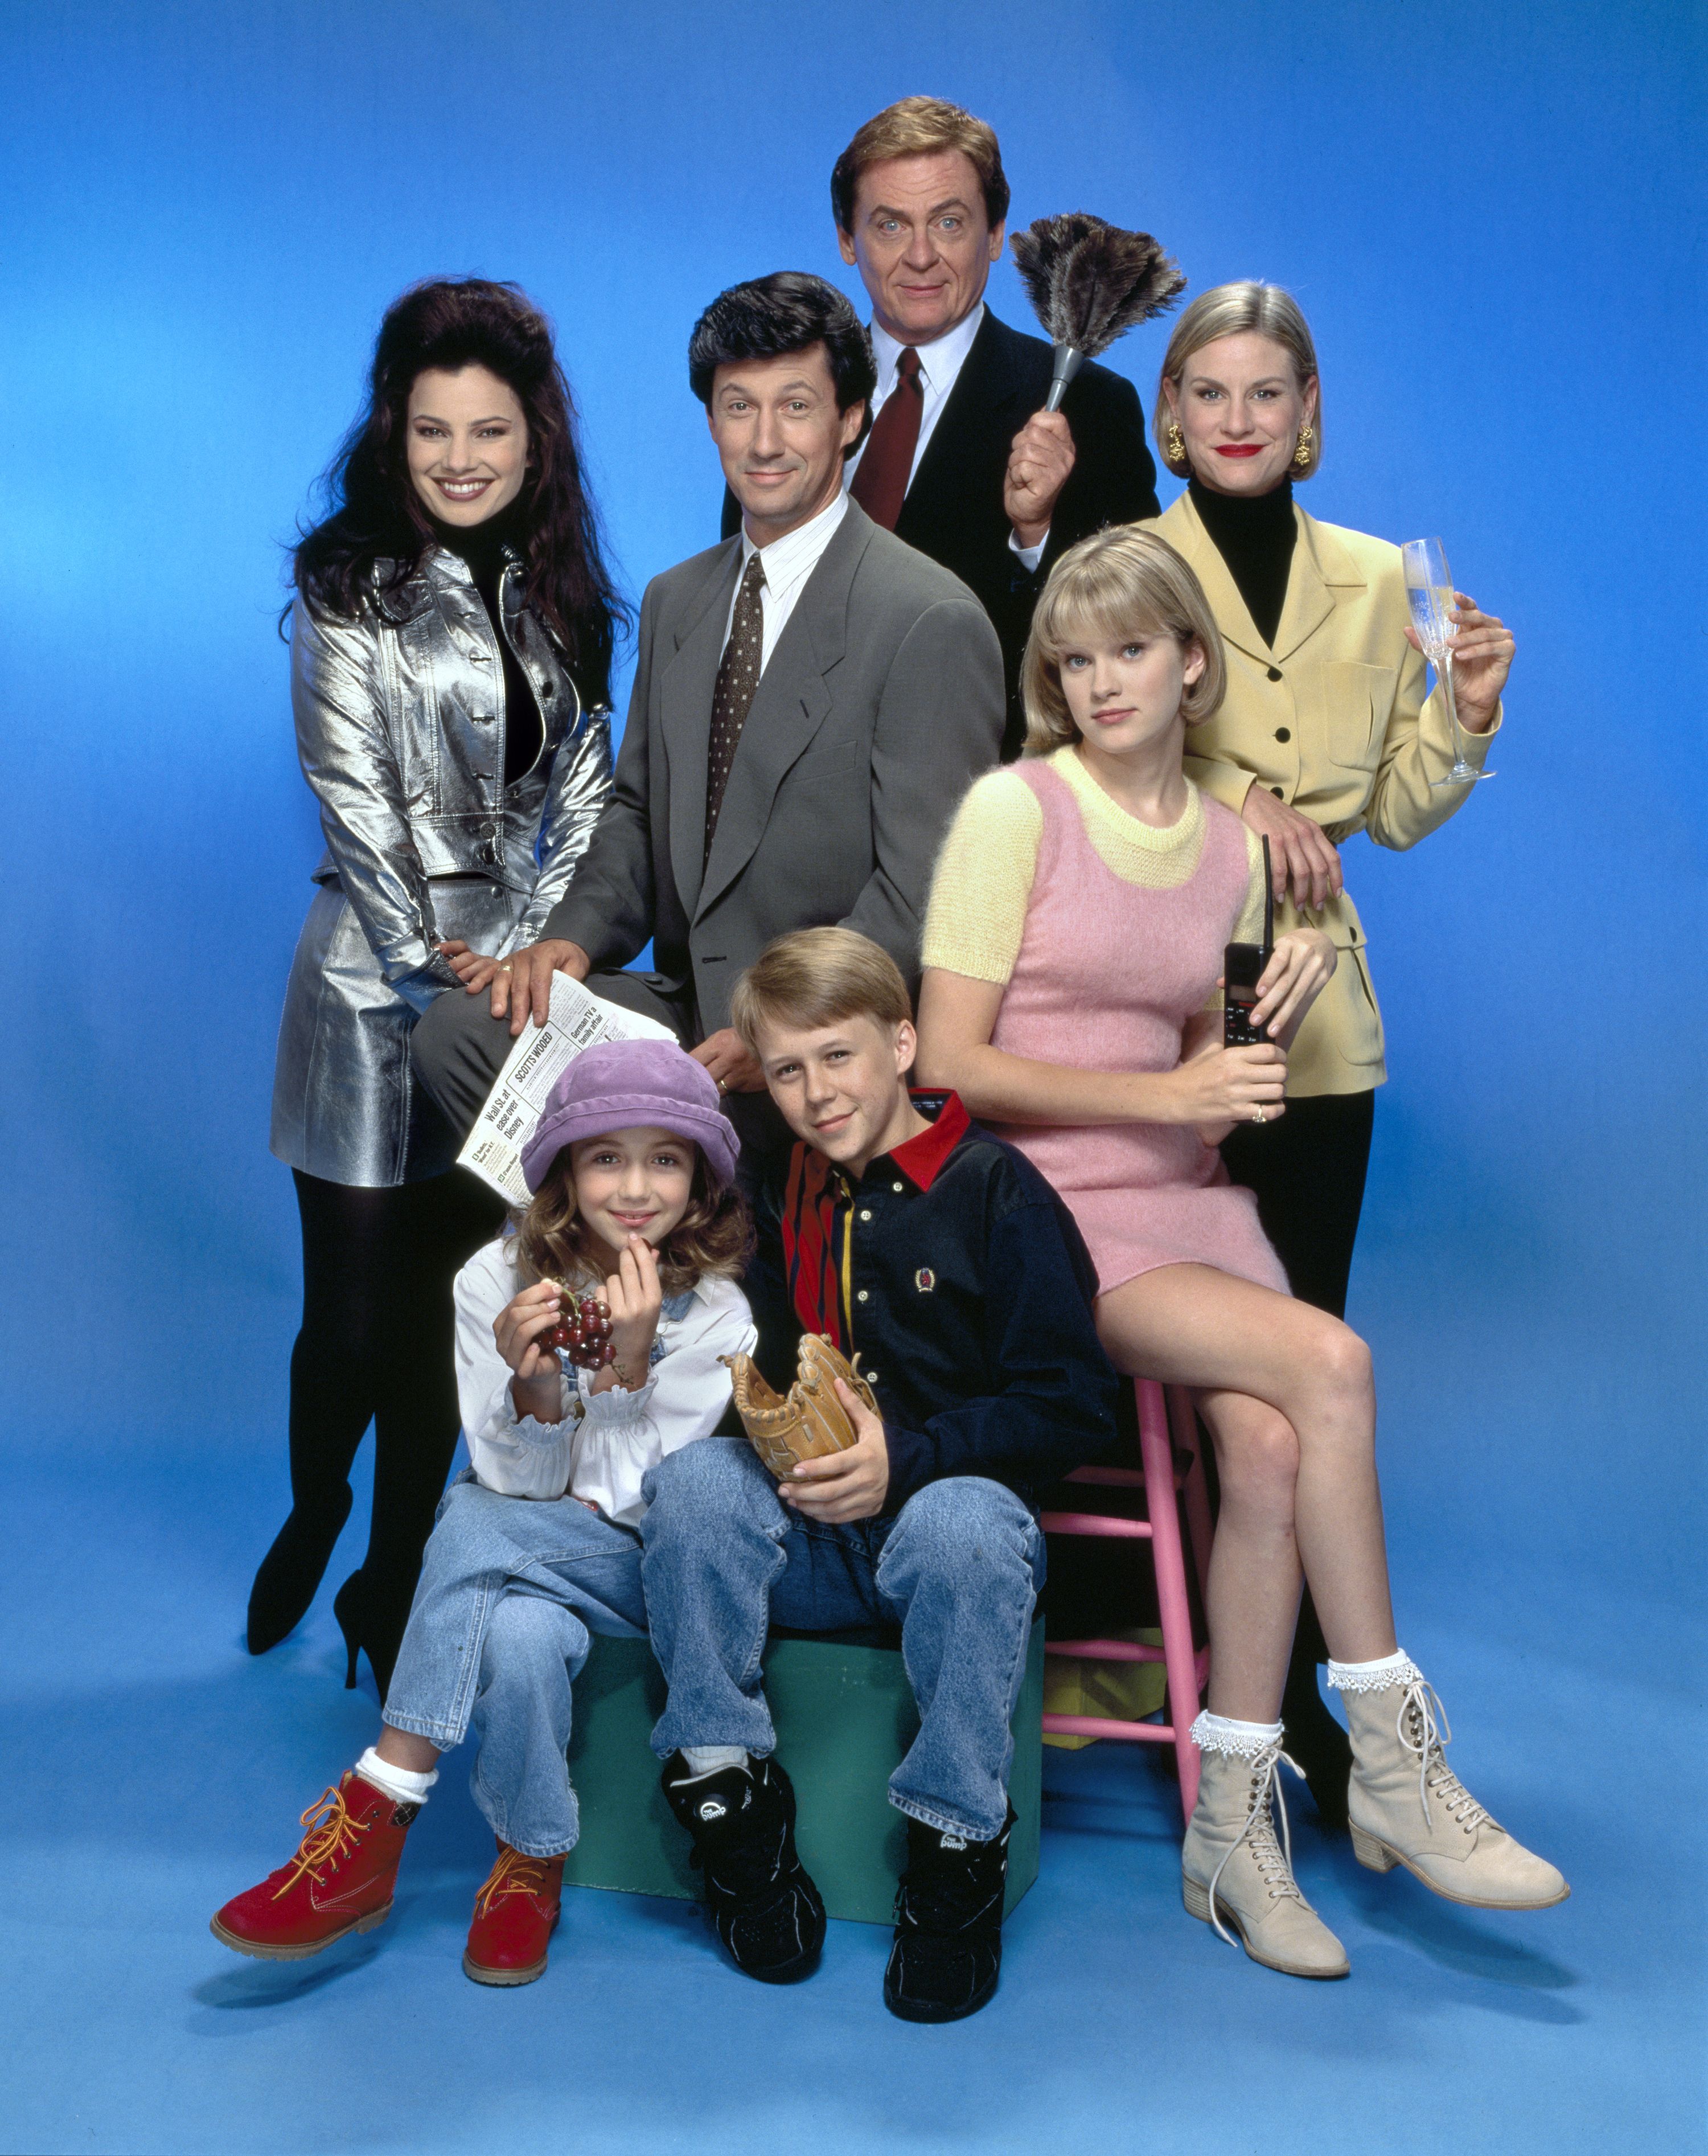 Remember when Fran Fine's fashion broke the 90s TV show mold?